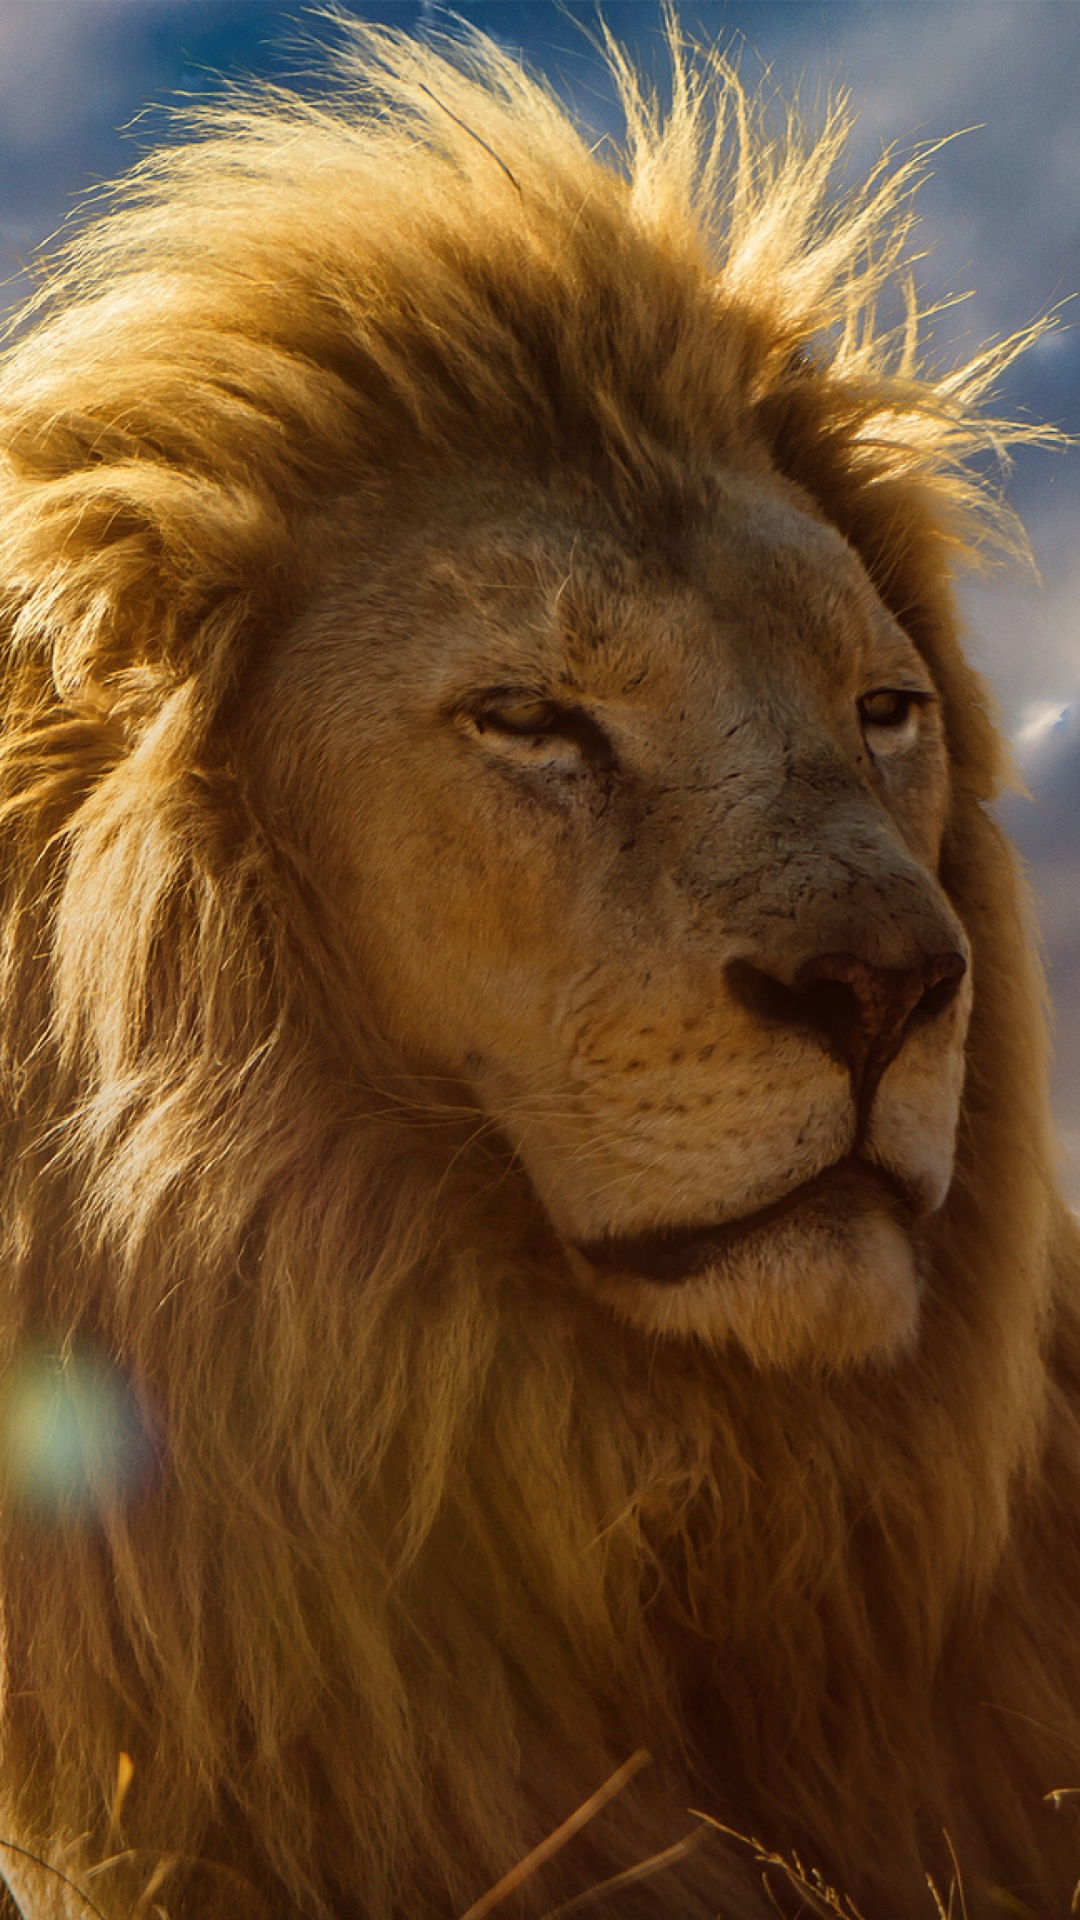 狮子, 头发, 马赛马的狮子, 野生动物, 猫科 壁纸 1080x1920 允许